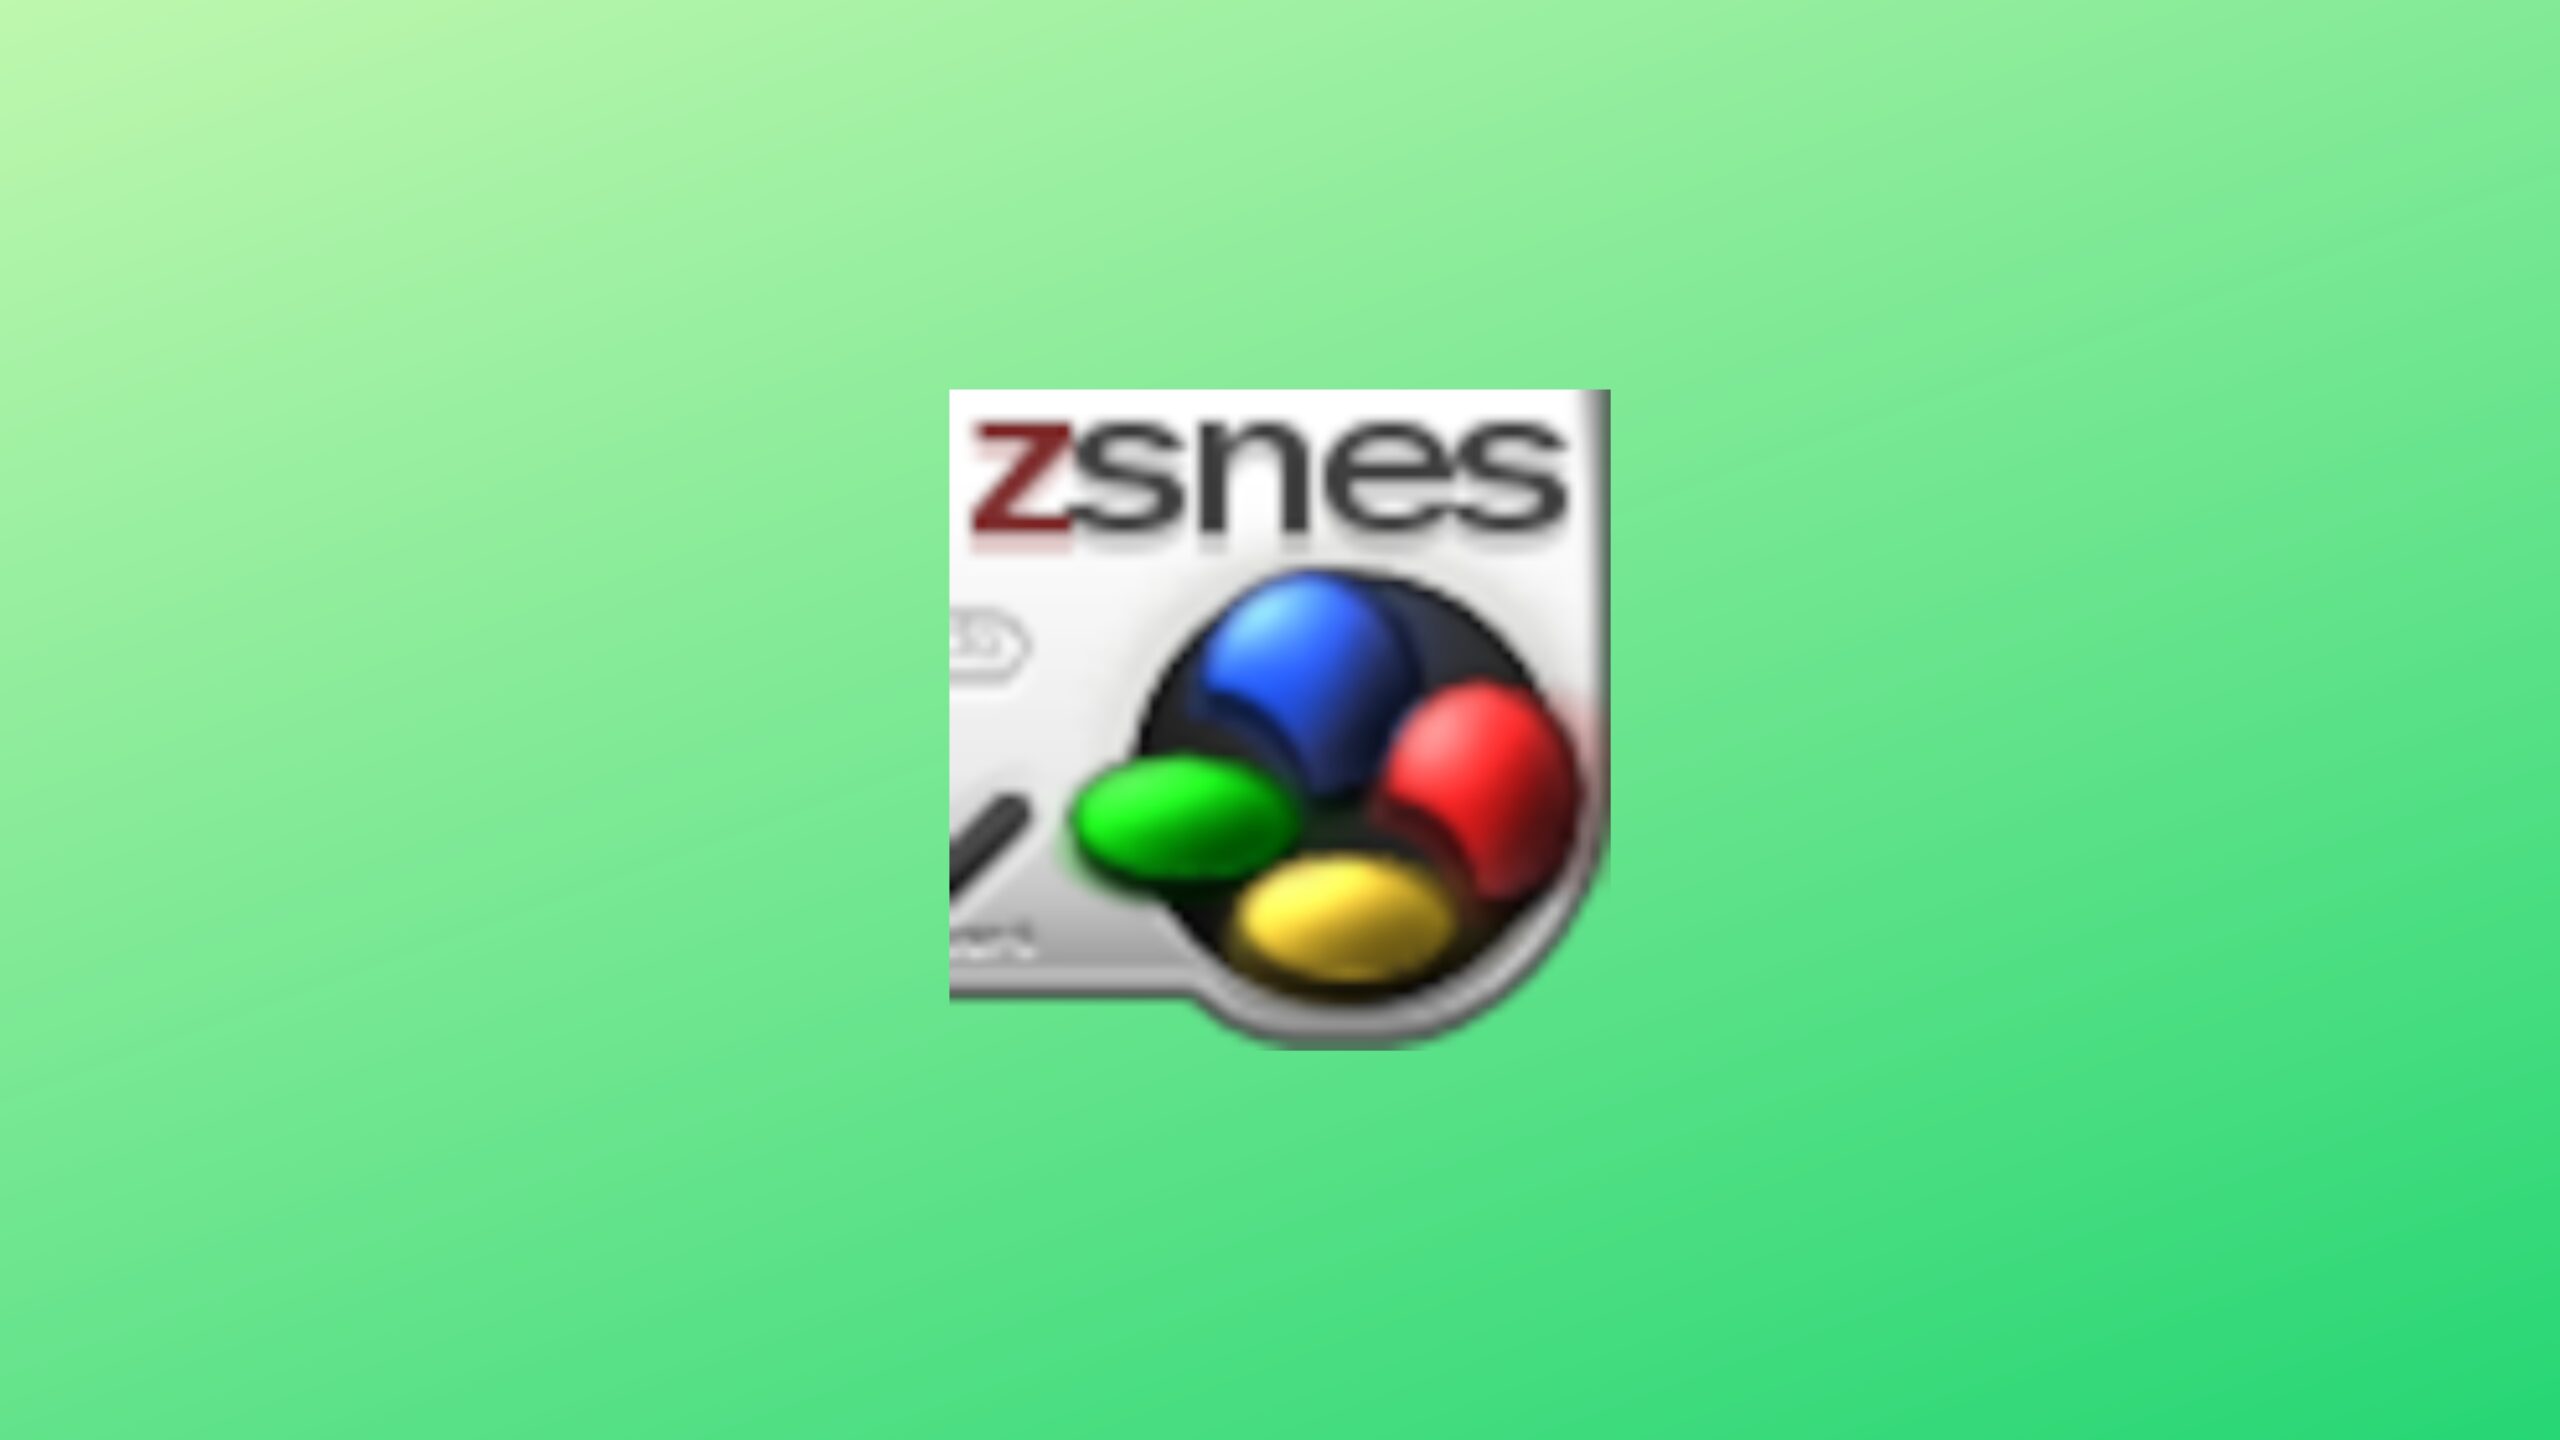 Como instalar o ZSNES - emulador de Super Nintendo no Ubuntu 32 e